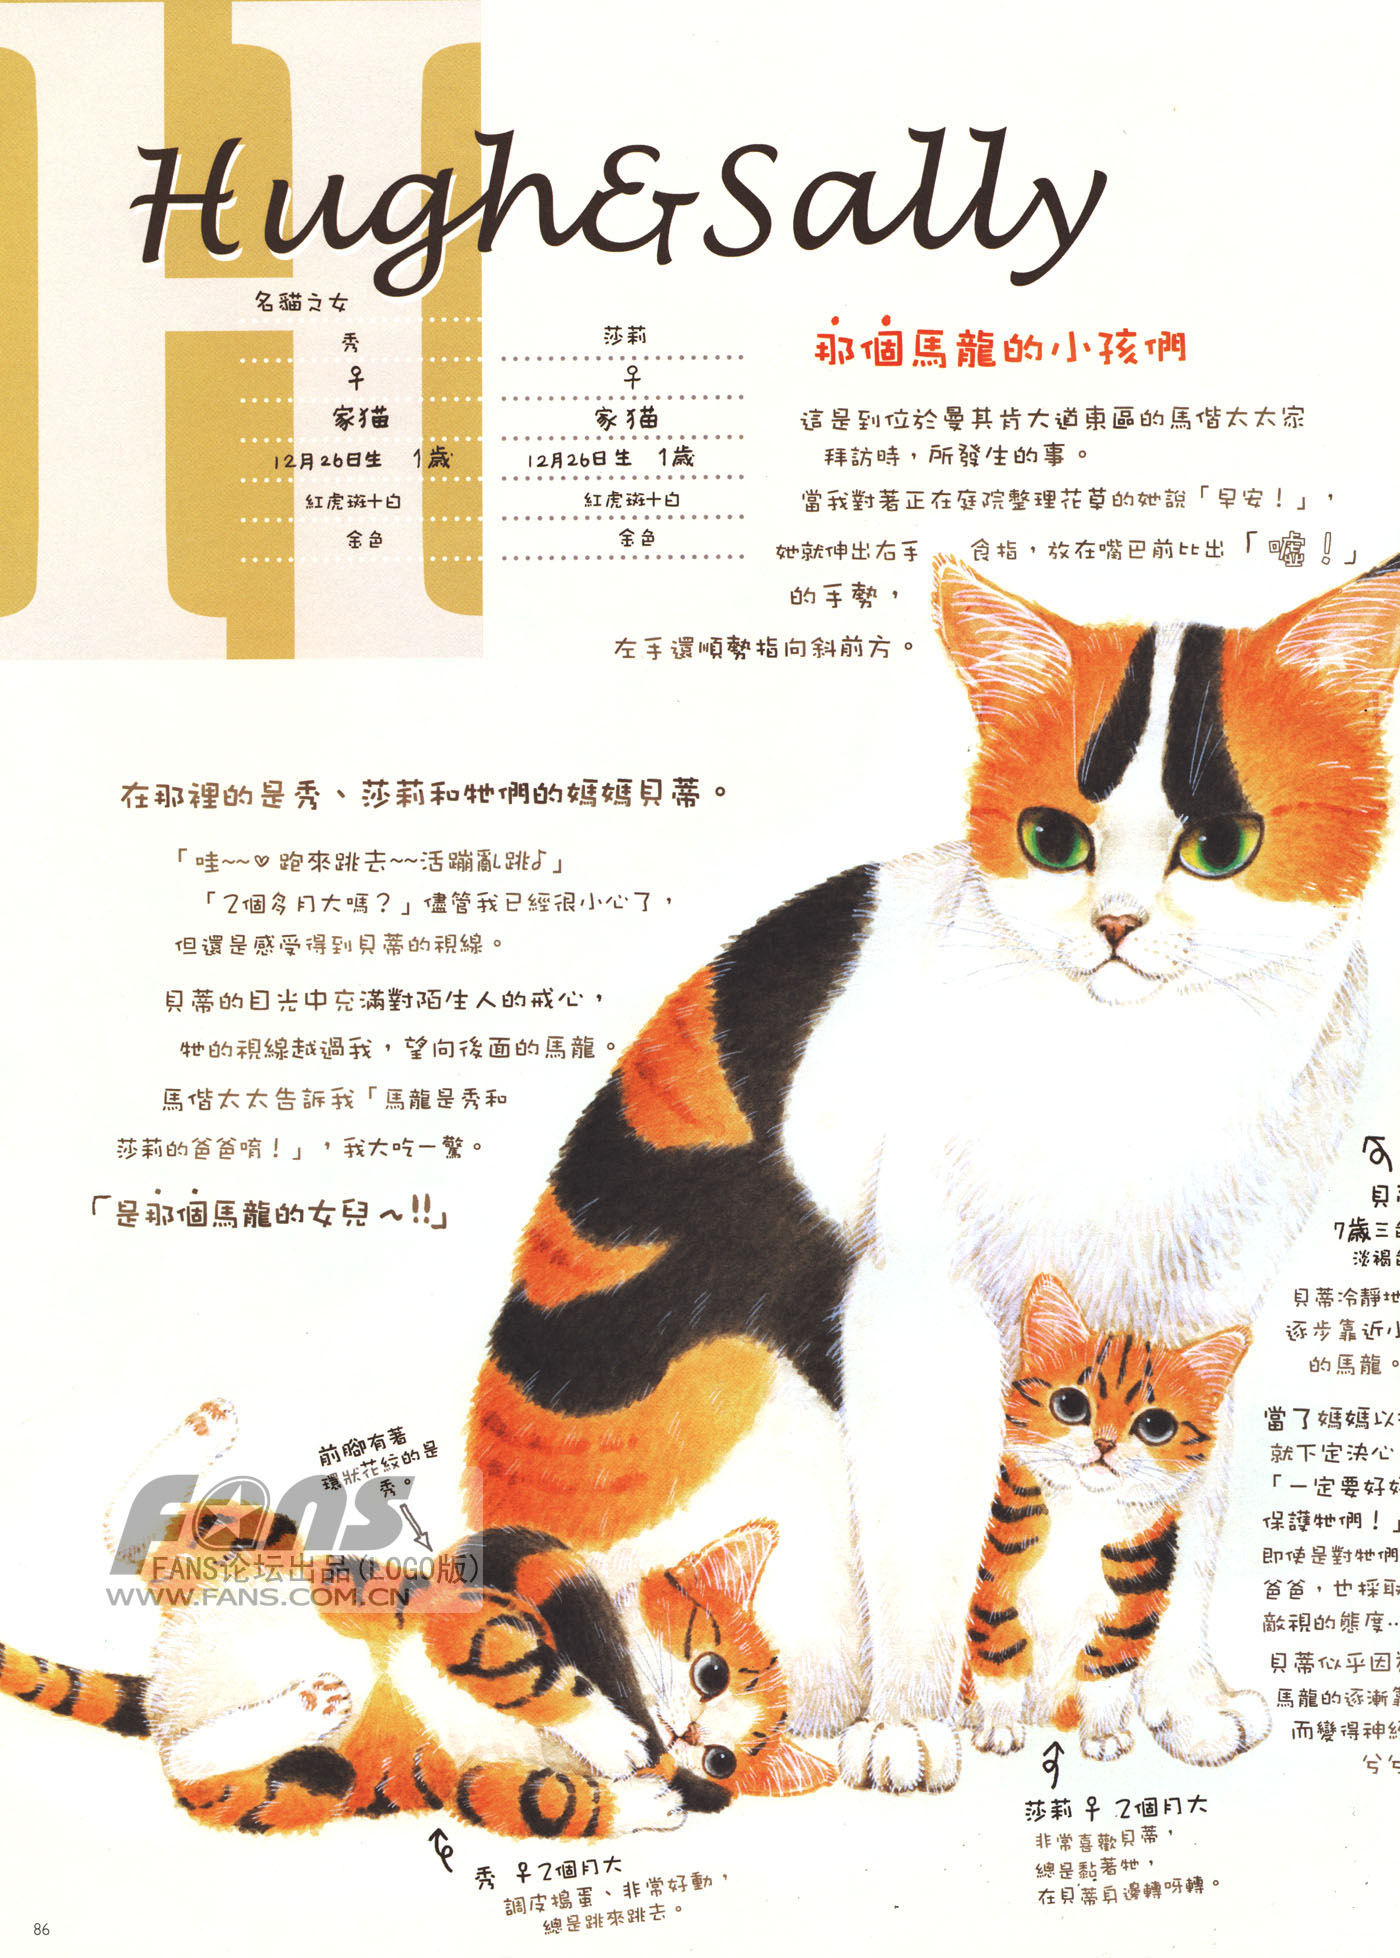 猫漫画图片大全(12)-猫猫萌图-屈阿零可爱屋